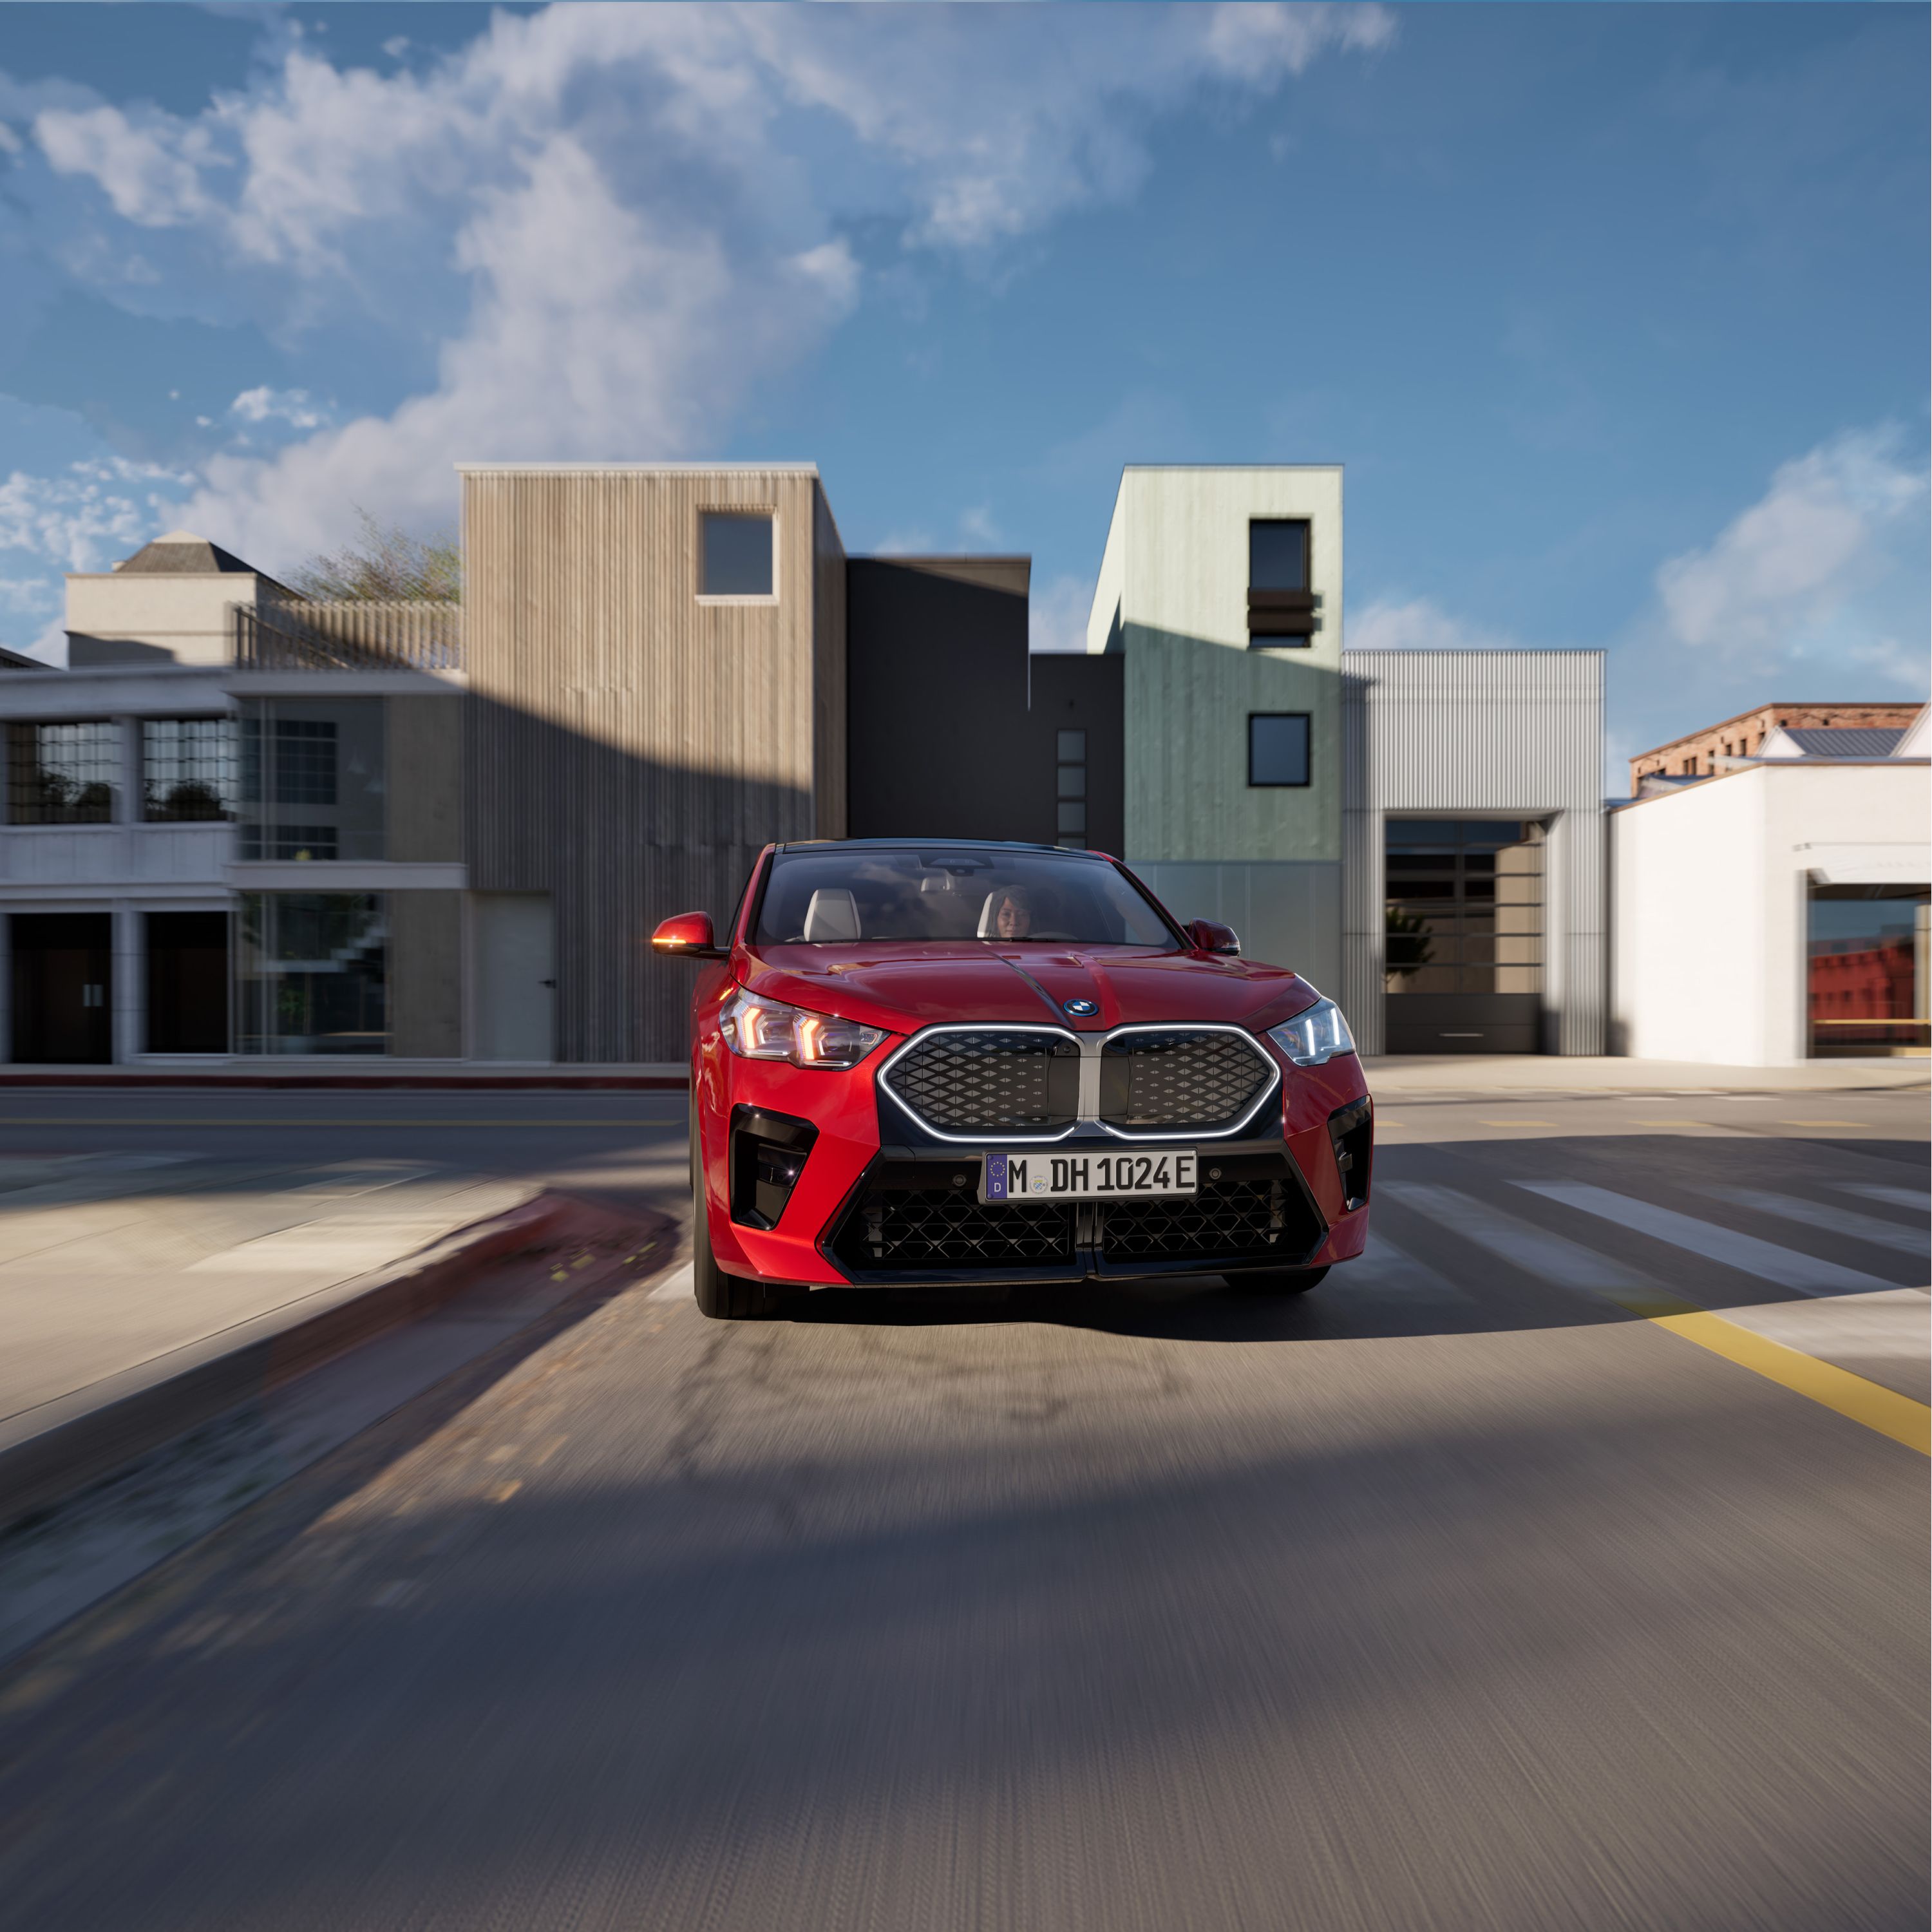 BMW X2 ηλεκτρικό SUV U10, χρηματοδότηση και μίσθωση